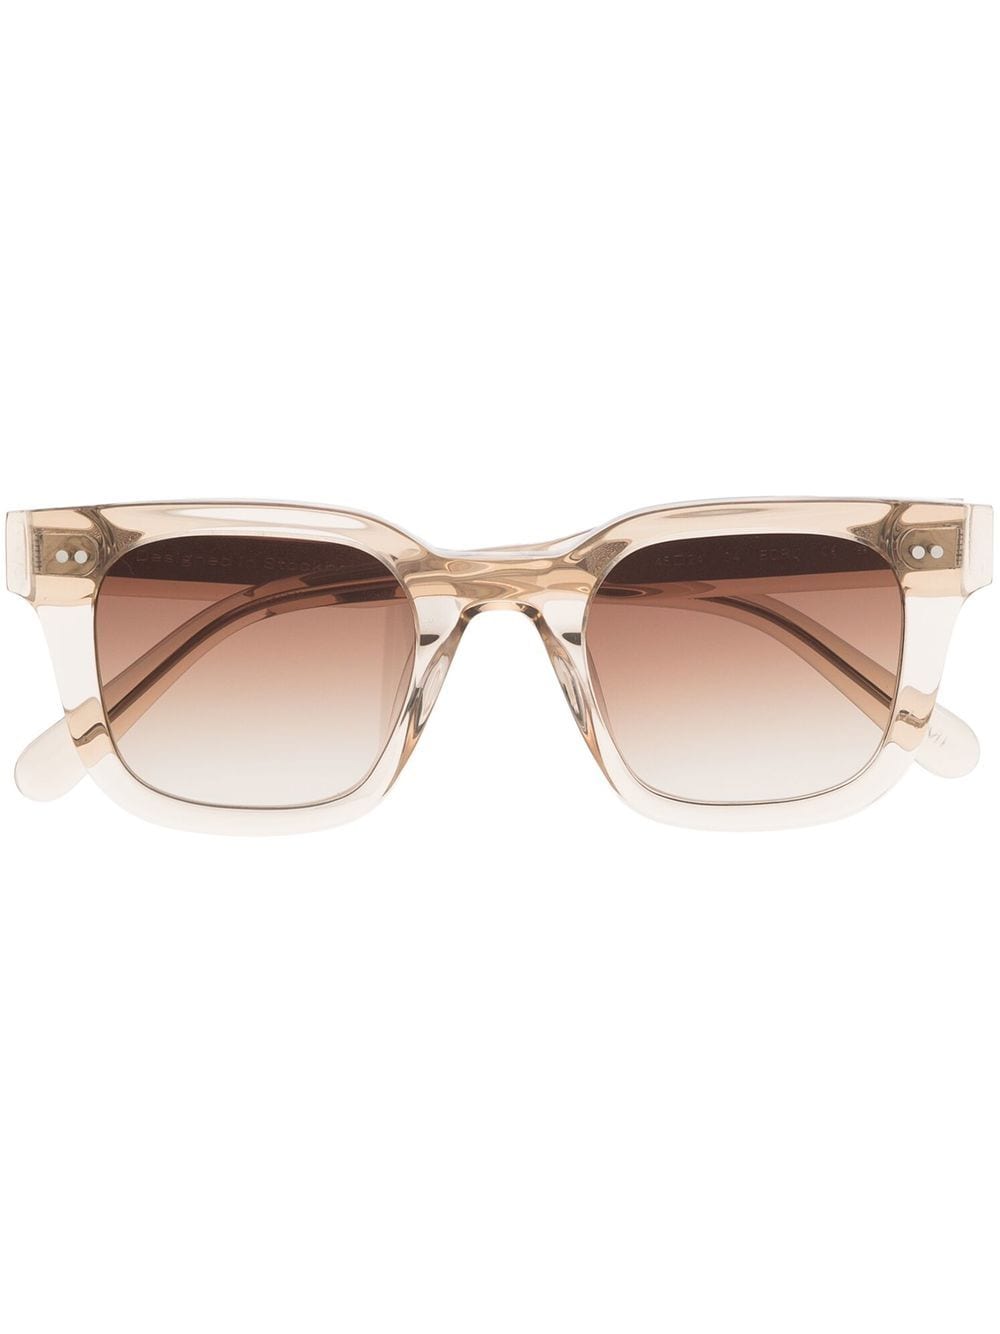 04 square-frame sunglasses